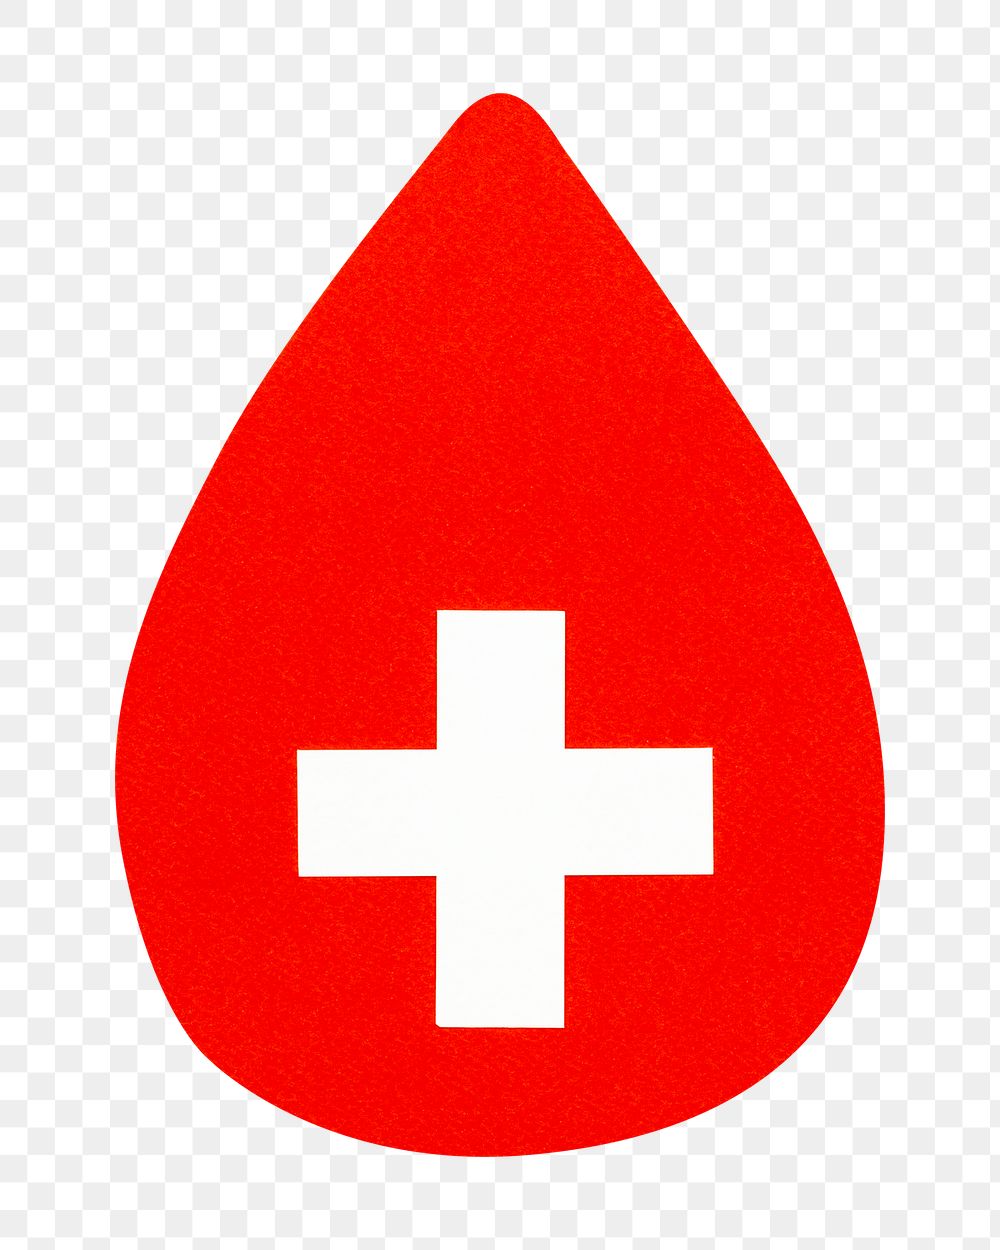 Png Blood drop paper mockup medical cross health DIY element